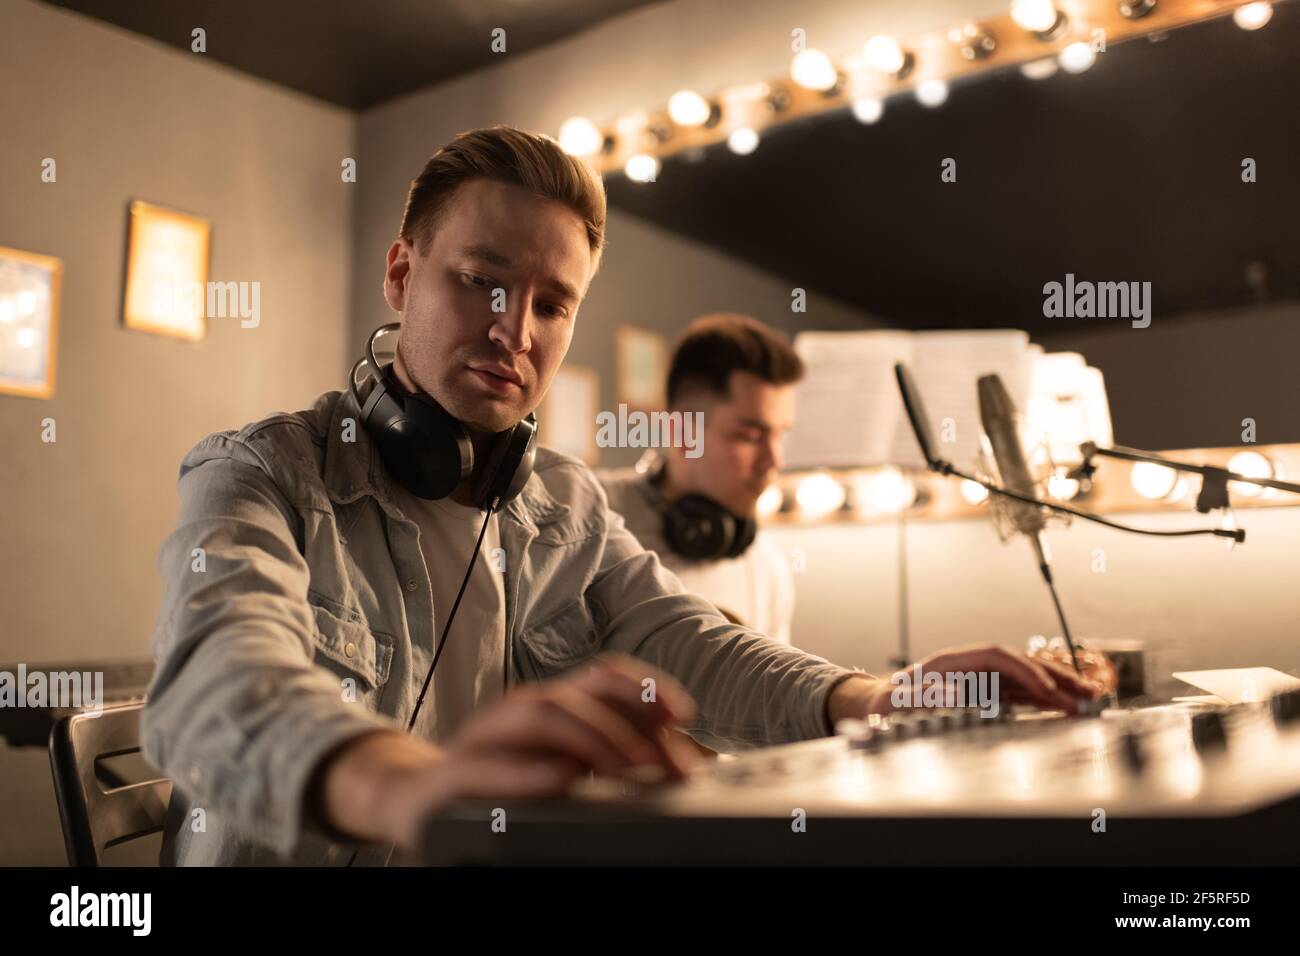 Musicien concentré utilisant un tableau sonore près d'un collègue Banque D'Images